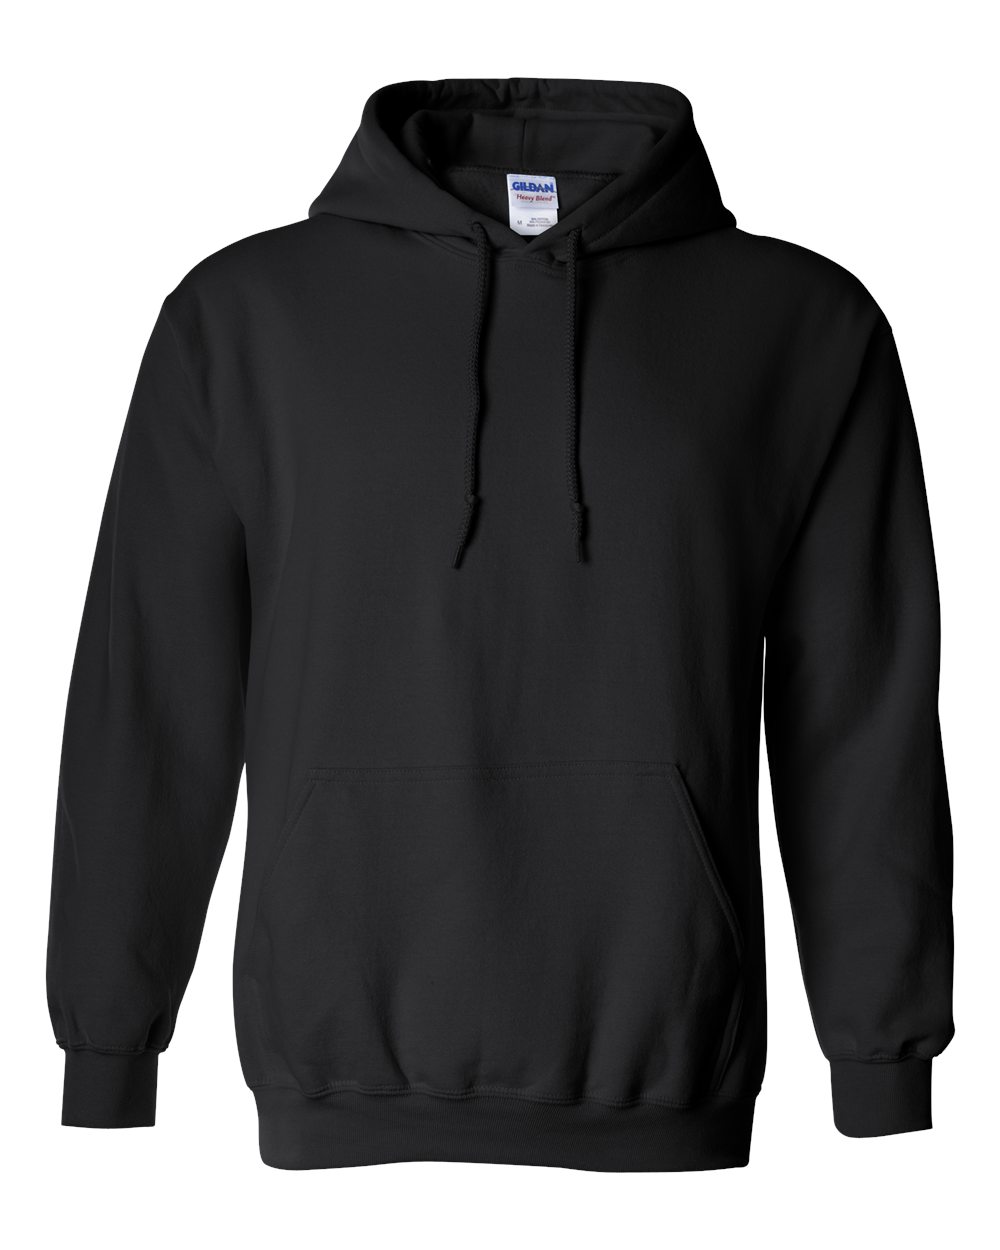 Gildan - Softstyle Hooded Sweatshirt - Black